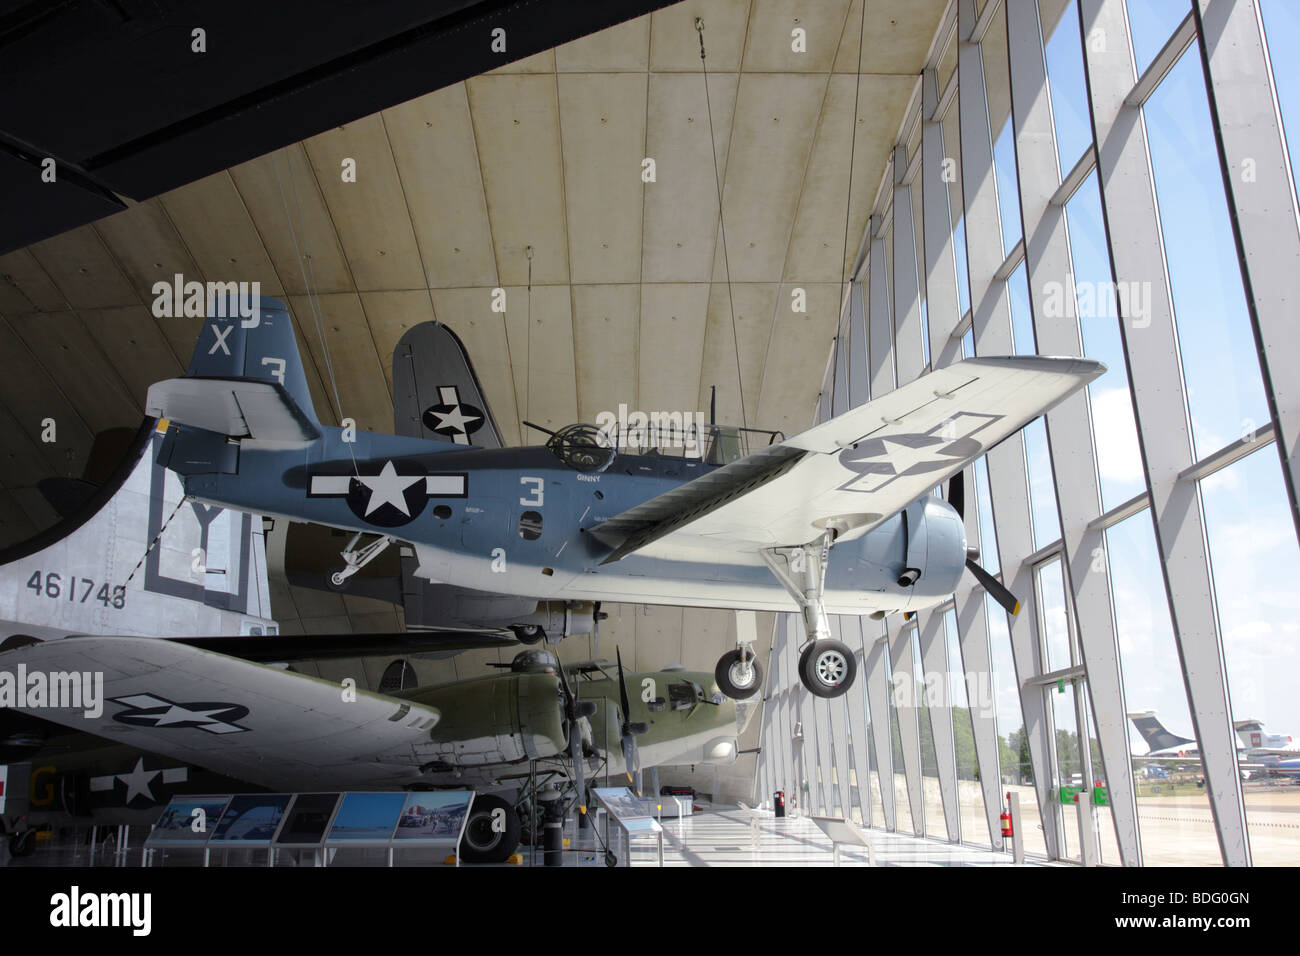 Propulsori singola grumman tbm3 avenger aereo,attualmente in esposizione permanente all'IWM duxford,Inghilterra. Foto Stock